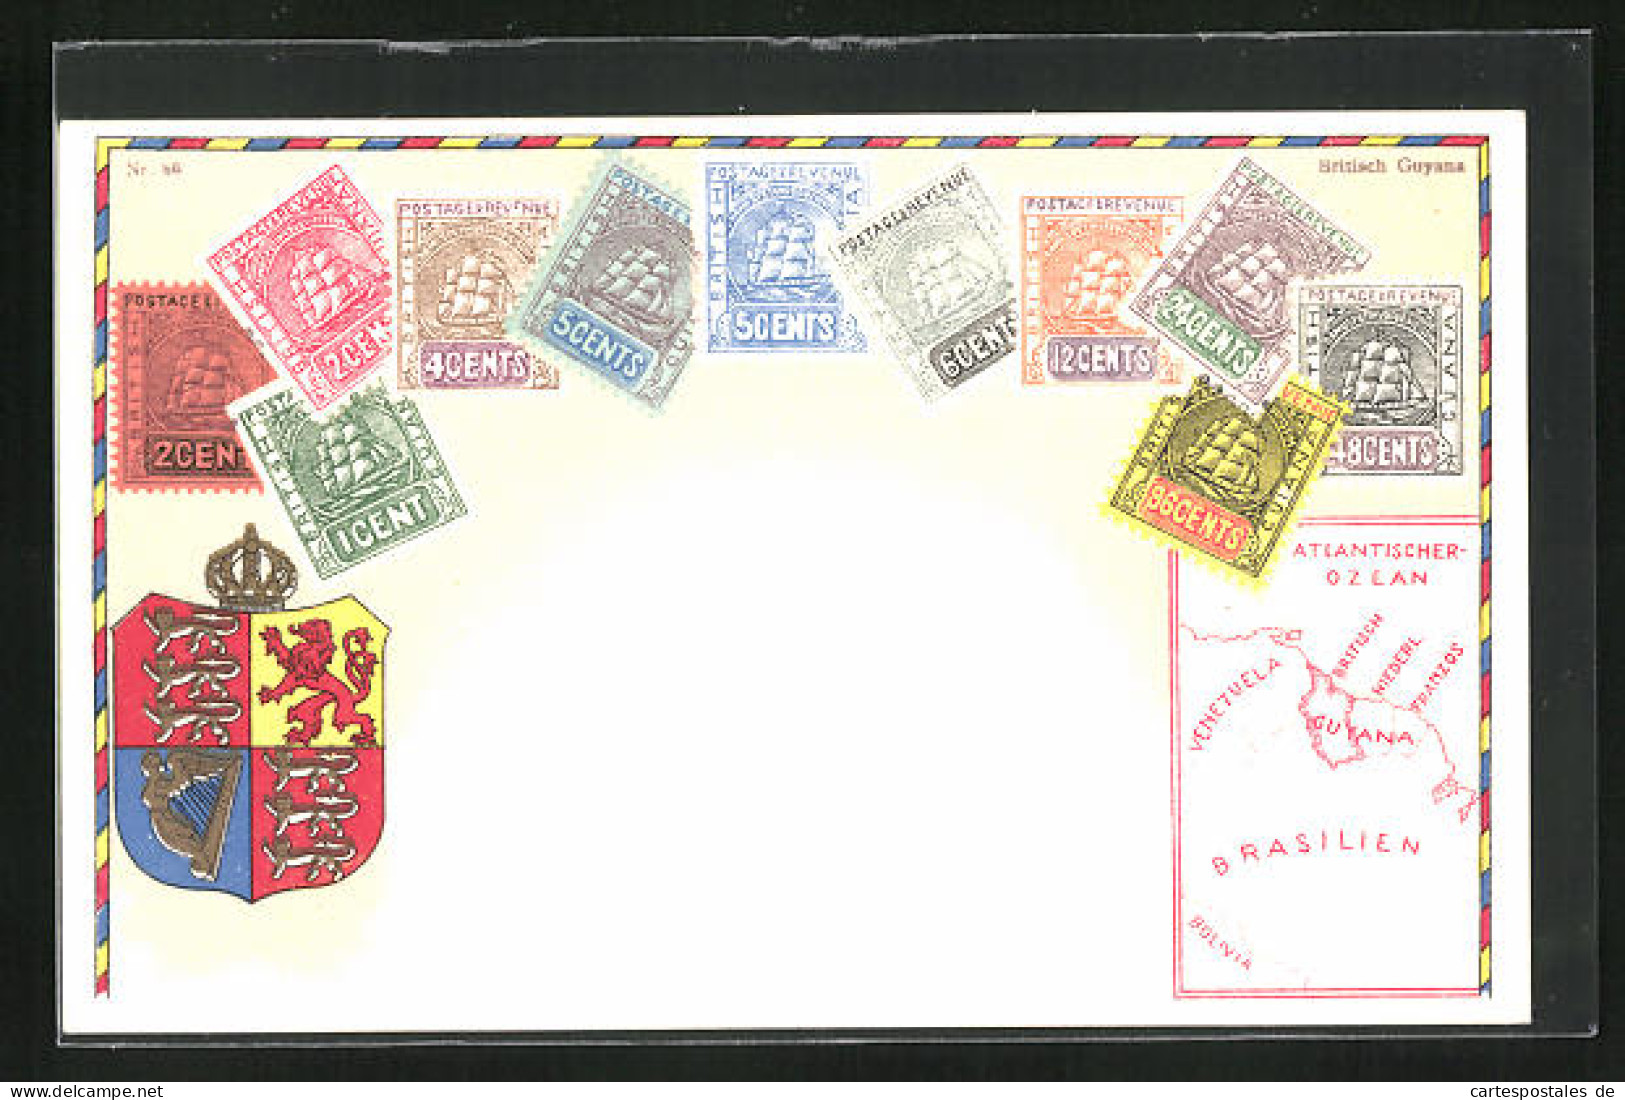 Lithographie Briefmarken Von Britisch Guyana Verschiedener Werte, Wappen Mit Krone, Landkarte Des Landes  - Briefmarken (Abbildungen)